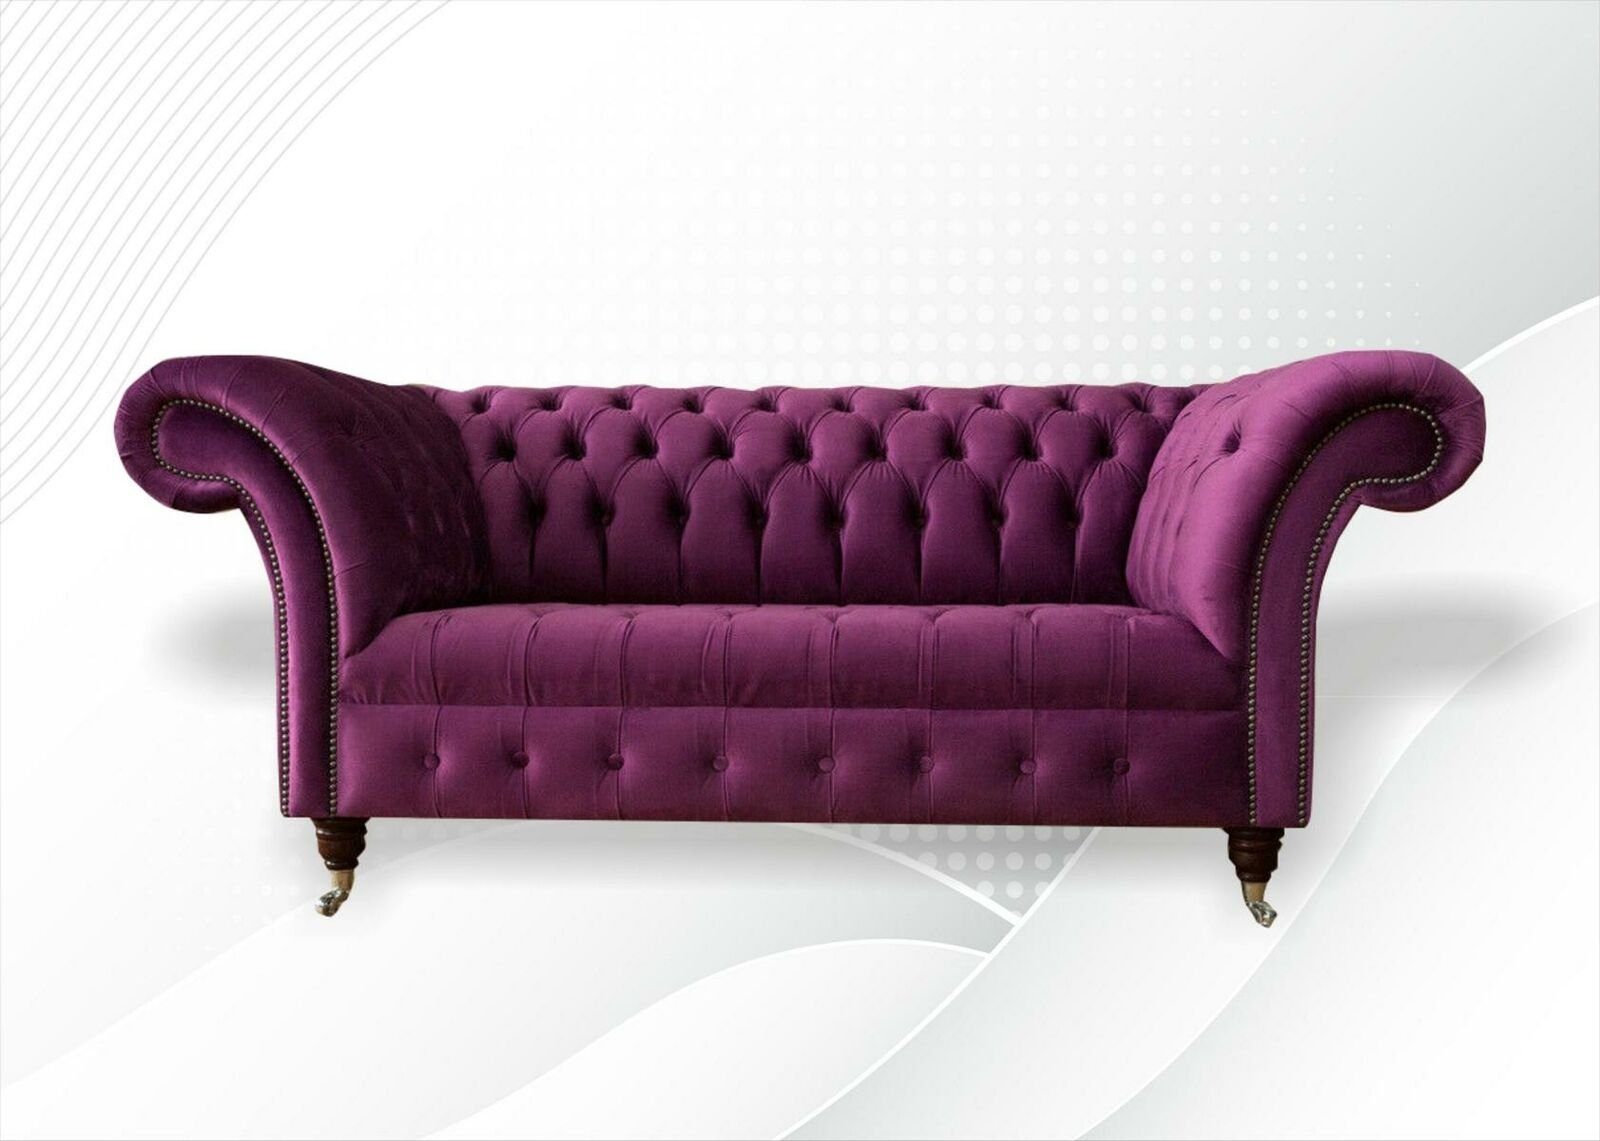 JVmoebel Chesterfield-Sofa Moderener violetter Chesterfield Zweisitzer Wohnzimmermöbel Neu, Made in Europe | Chesterfield-Sofas